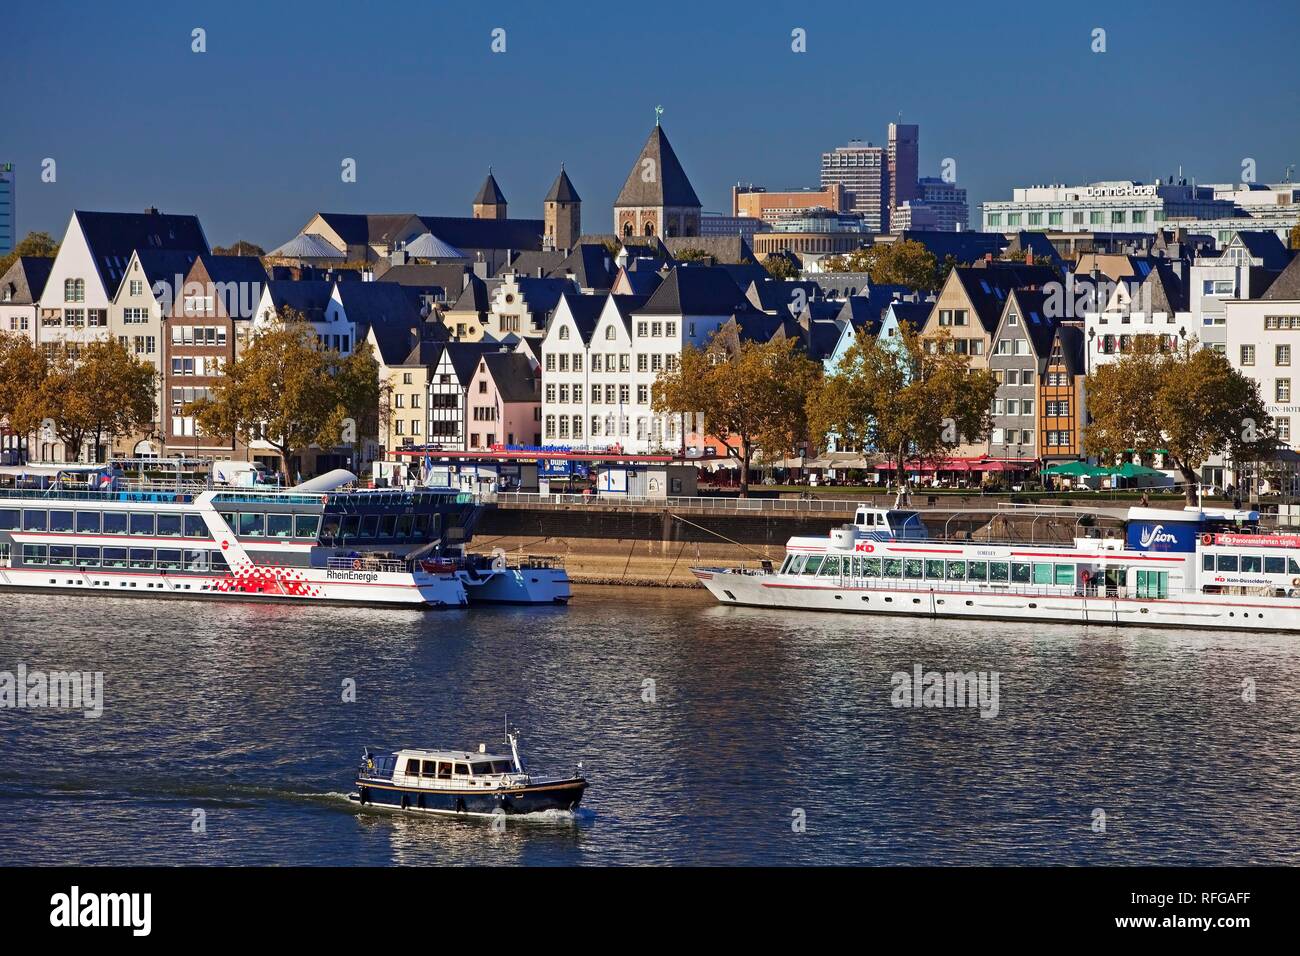 Rin con buques en la parte delantera del casco antiguo de la ciudad, Colonia, Renania, Renania del Norte-Westfalia, Alemania Foto de stock